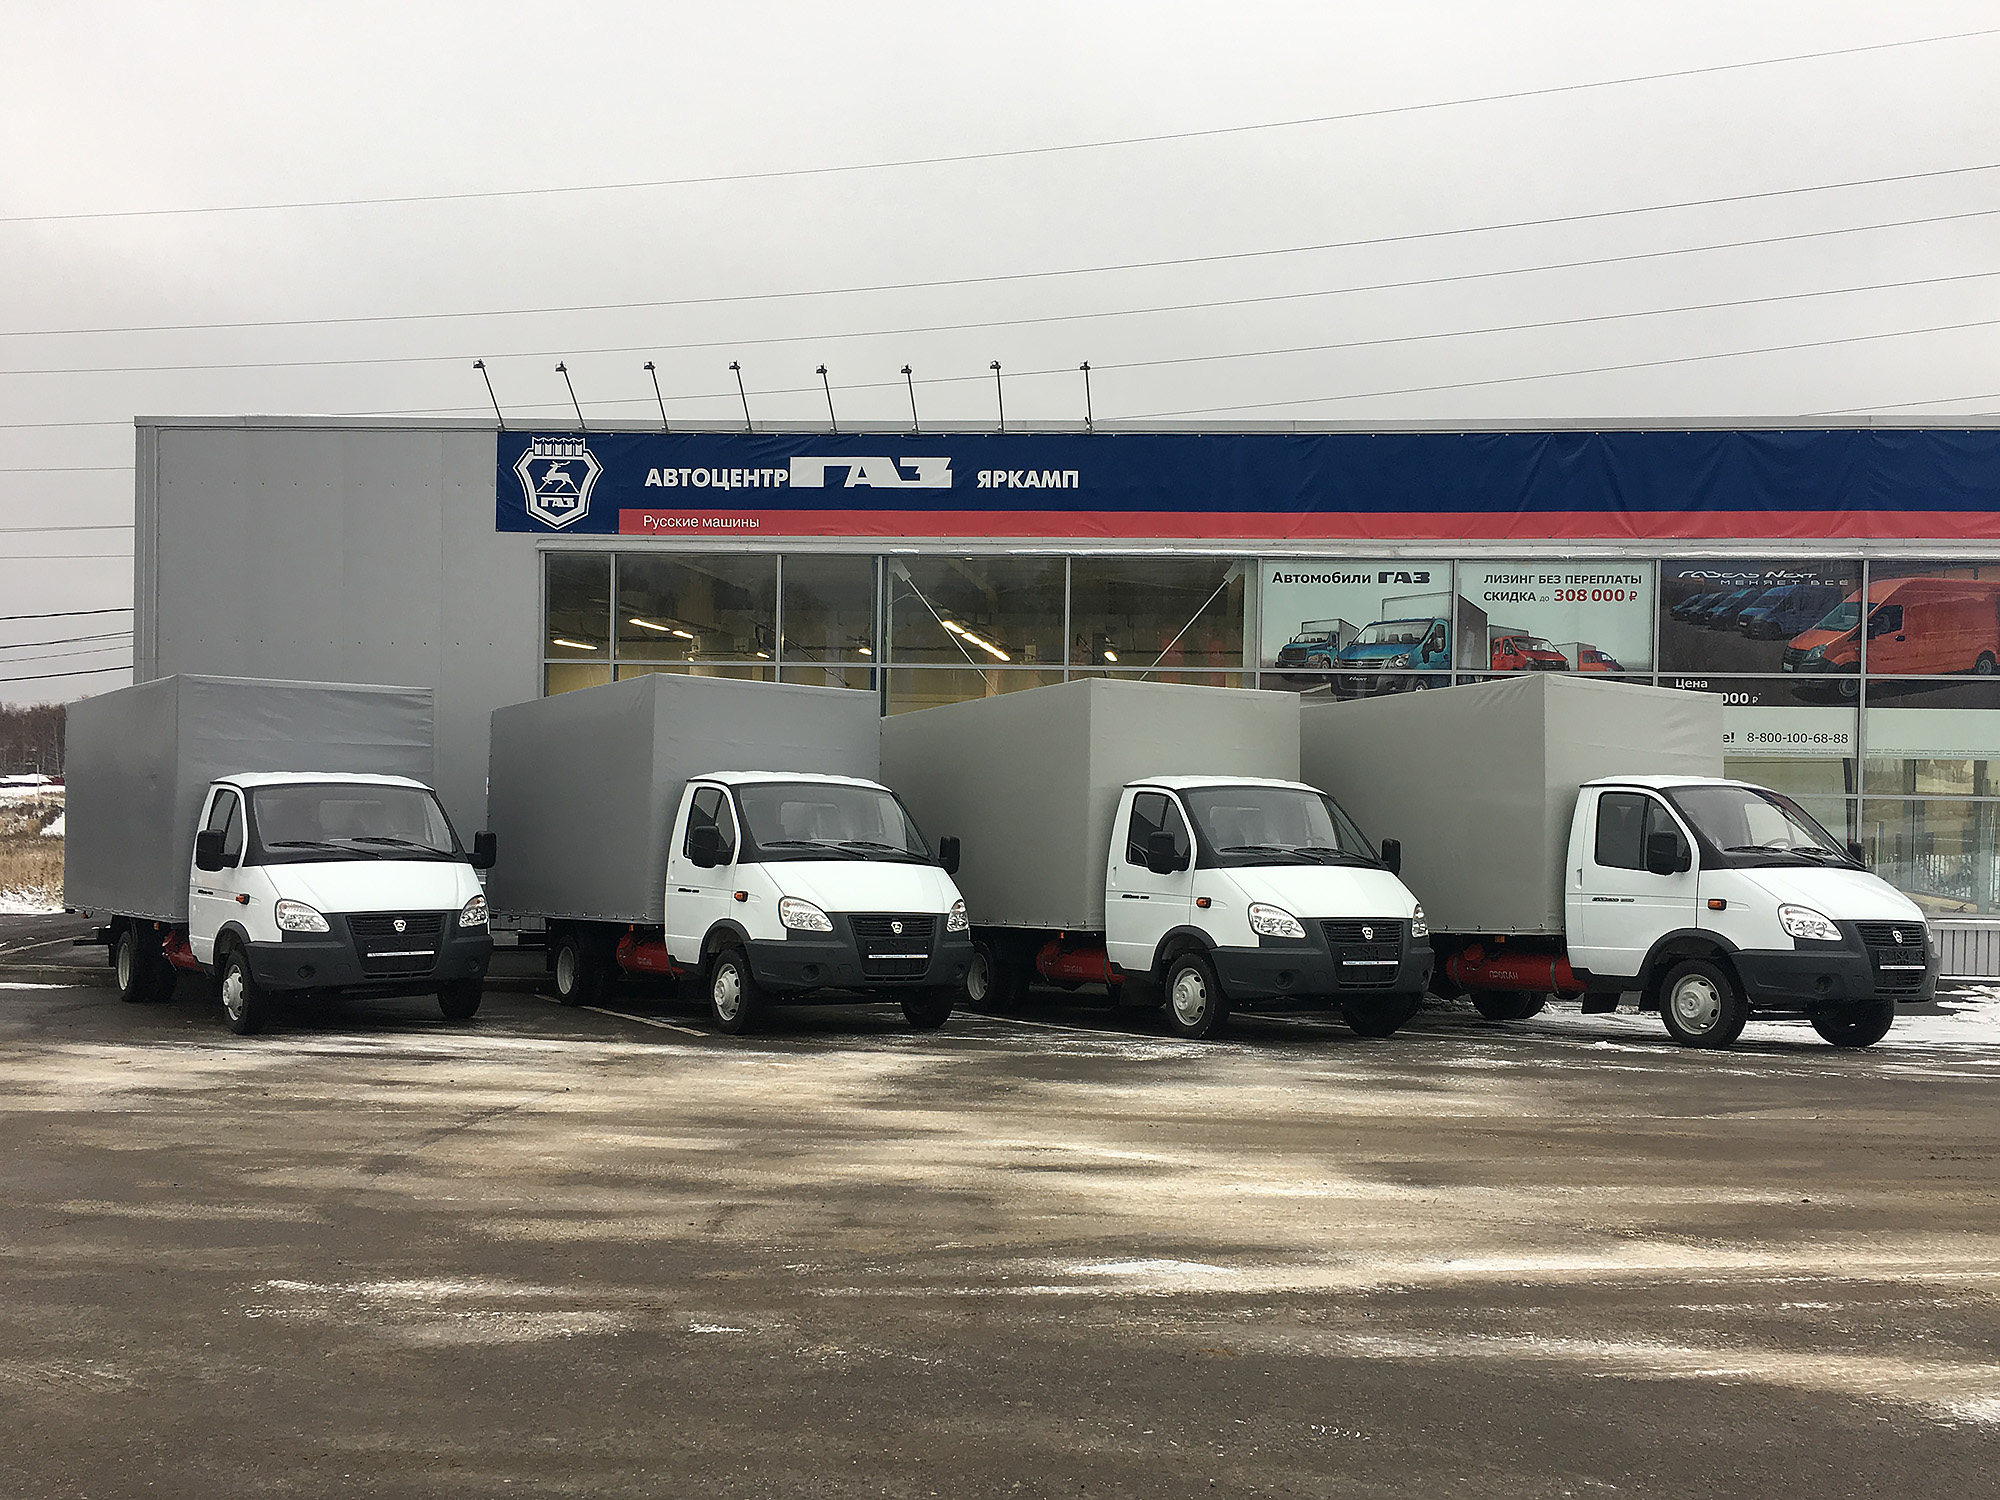 Пять грузовых фургонов ГАЗ переданы в оперативный лизинг